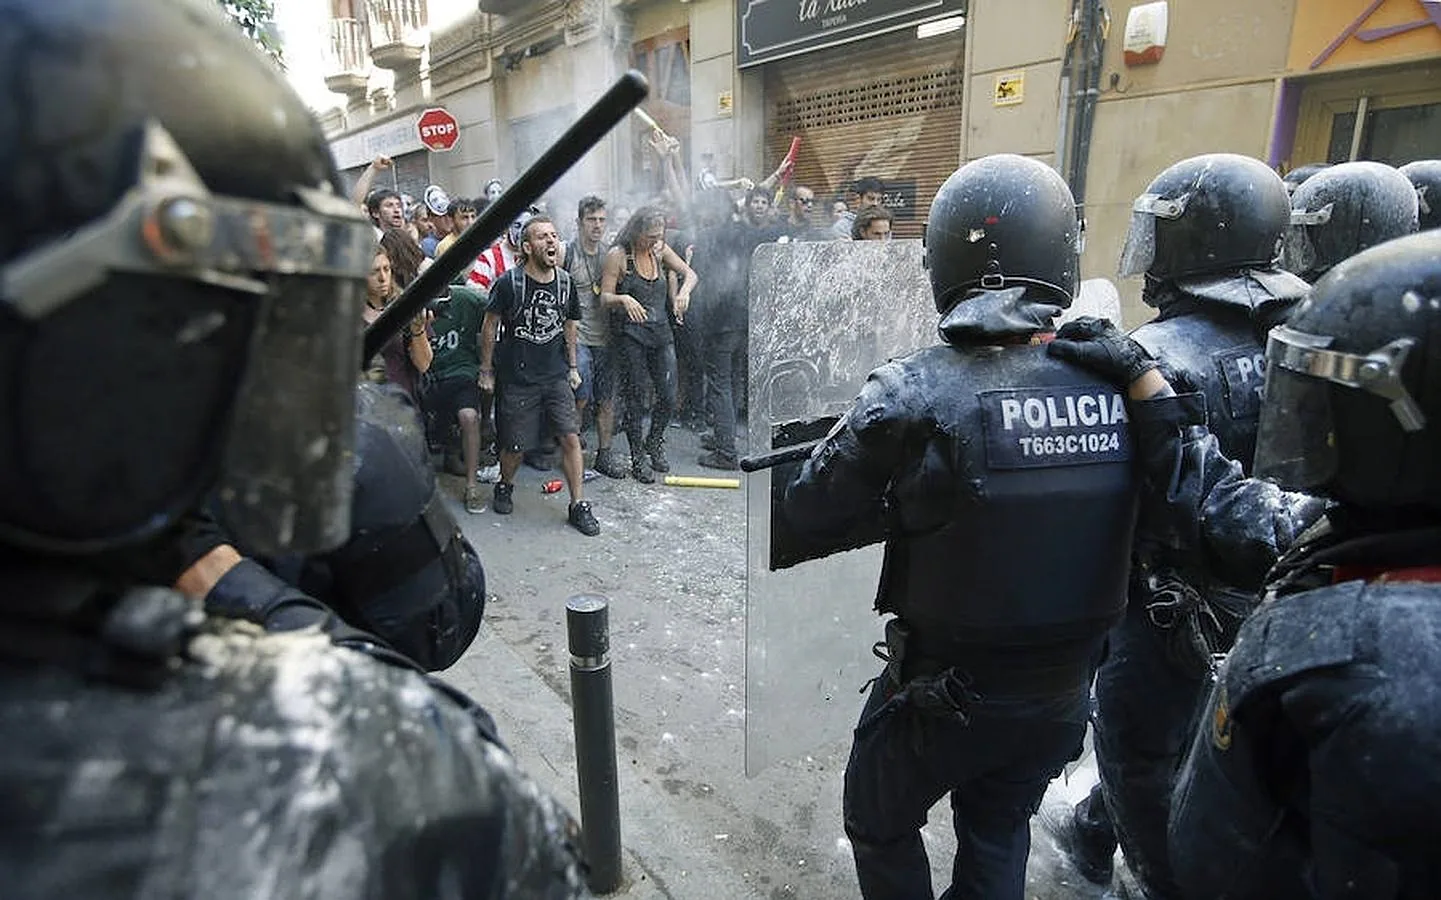 Se han registrando momentos de tensión porque los mossos han repelido agresiones como el lanzamiento de latas y piedras